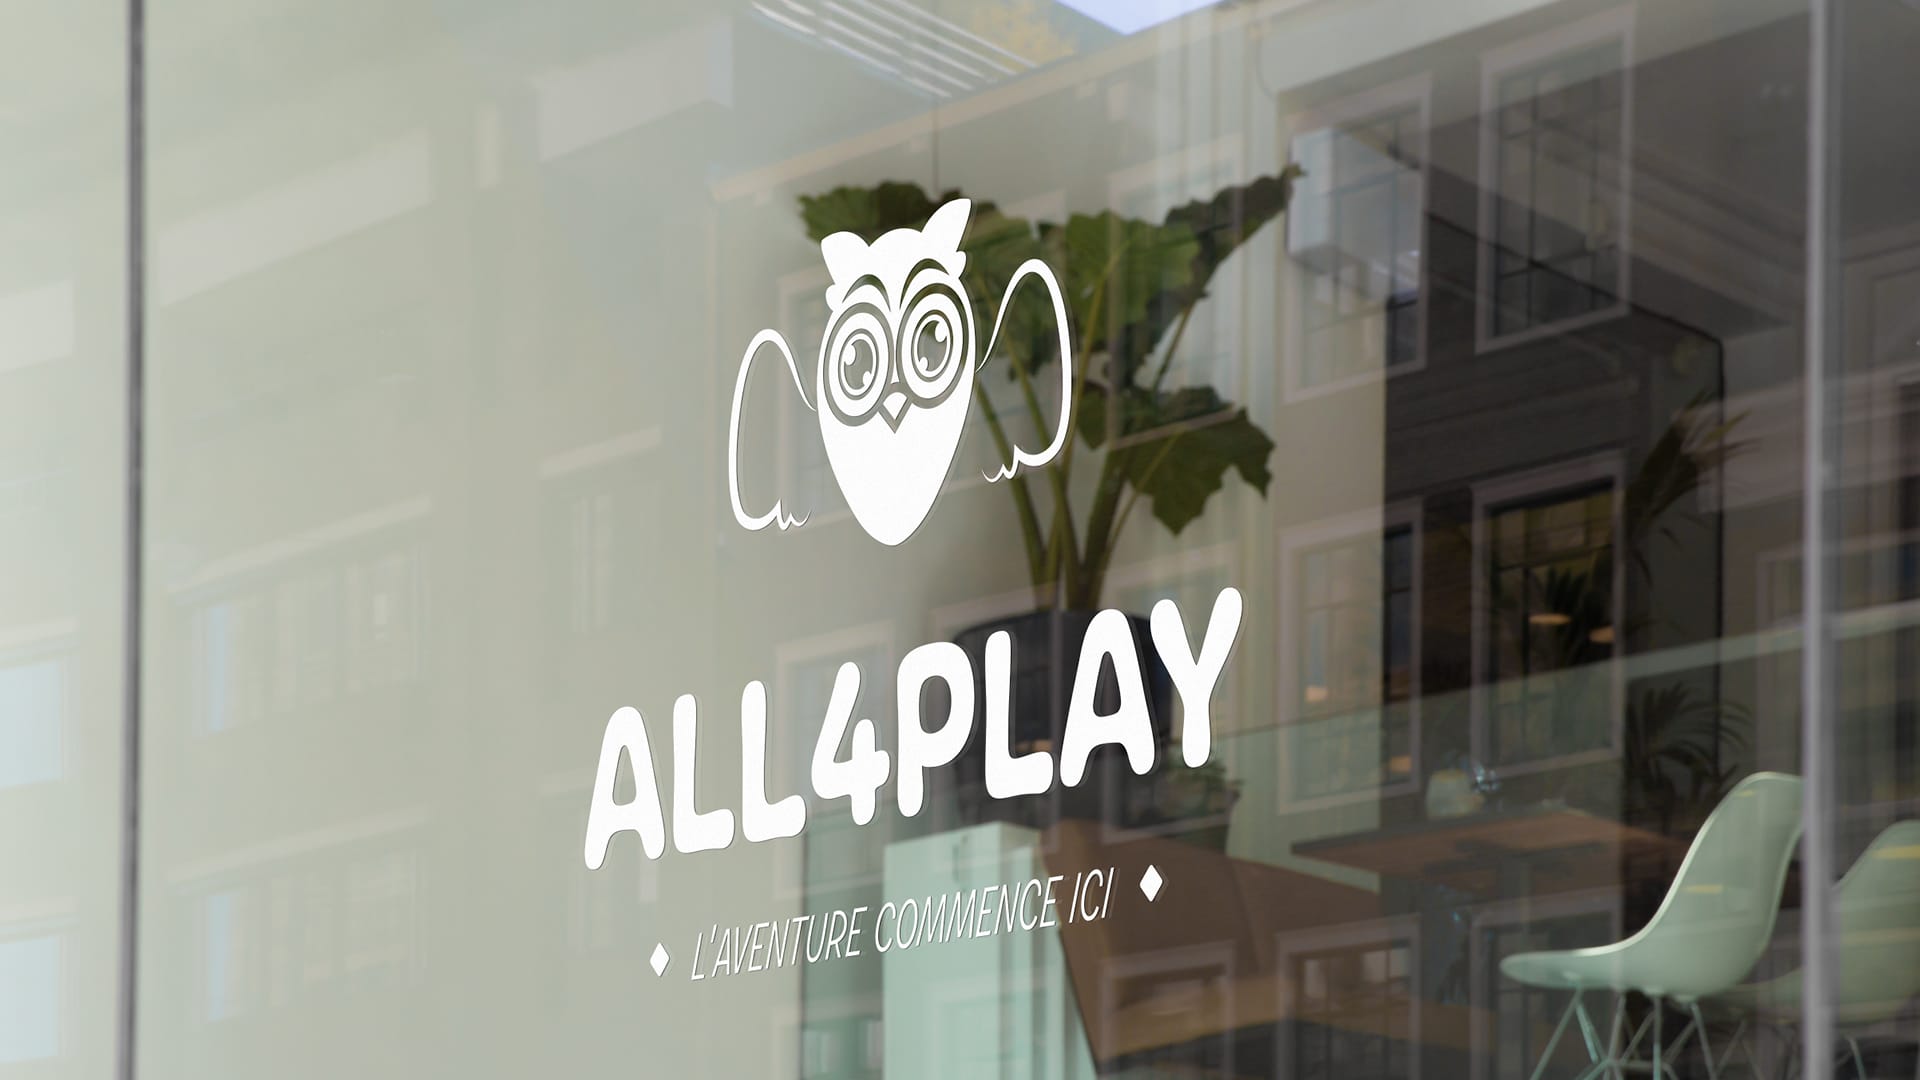 Découvrez la nouvelle identité visuelle d'All4play, créée par NRV, agence charte graphique Toulouse : logo distinctif, charte graphique et supports dynamiques.